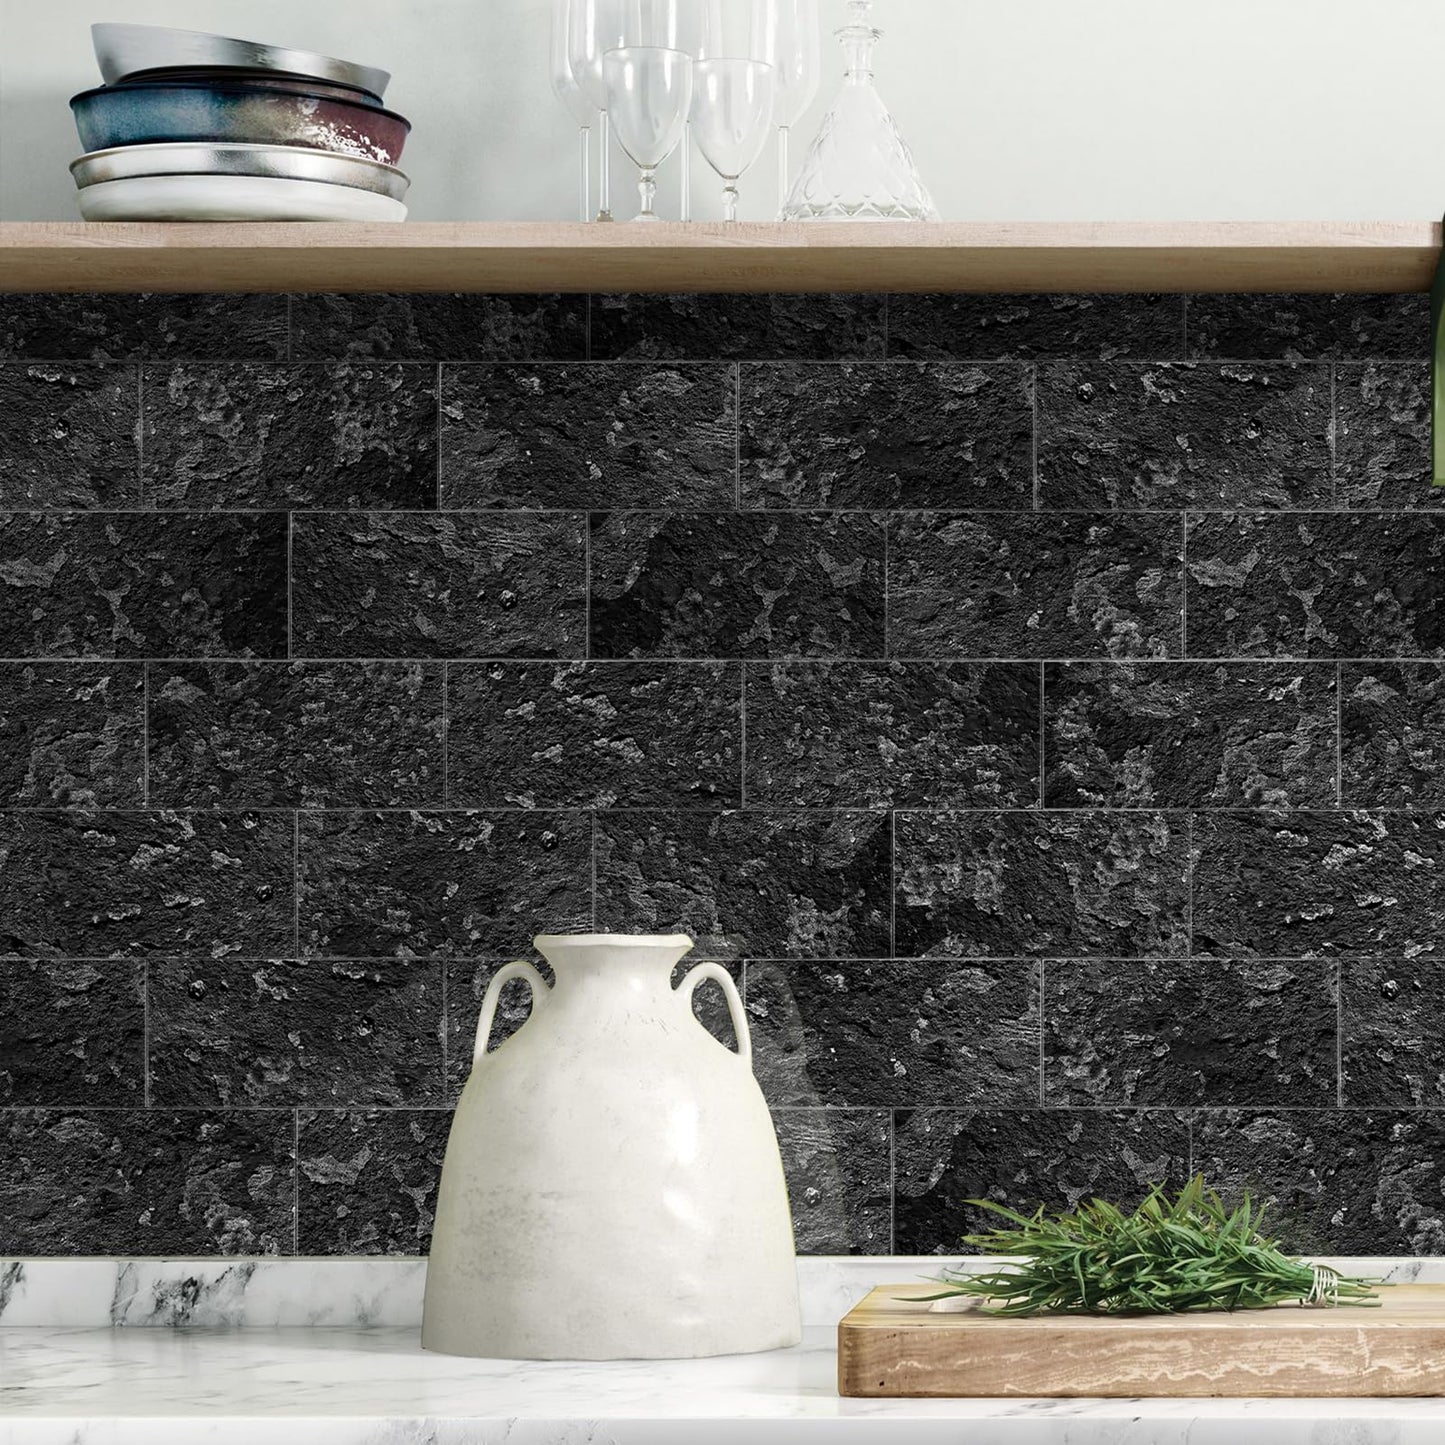 8" x 4" Peel and Stick Backsplash Tile for Bathroom & Kitchen Backsplash